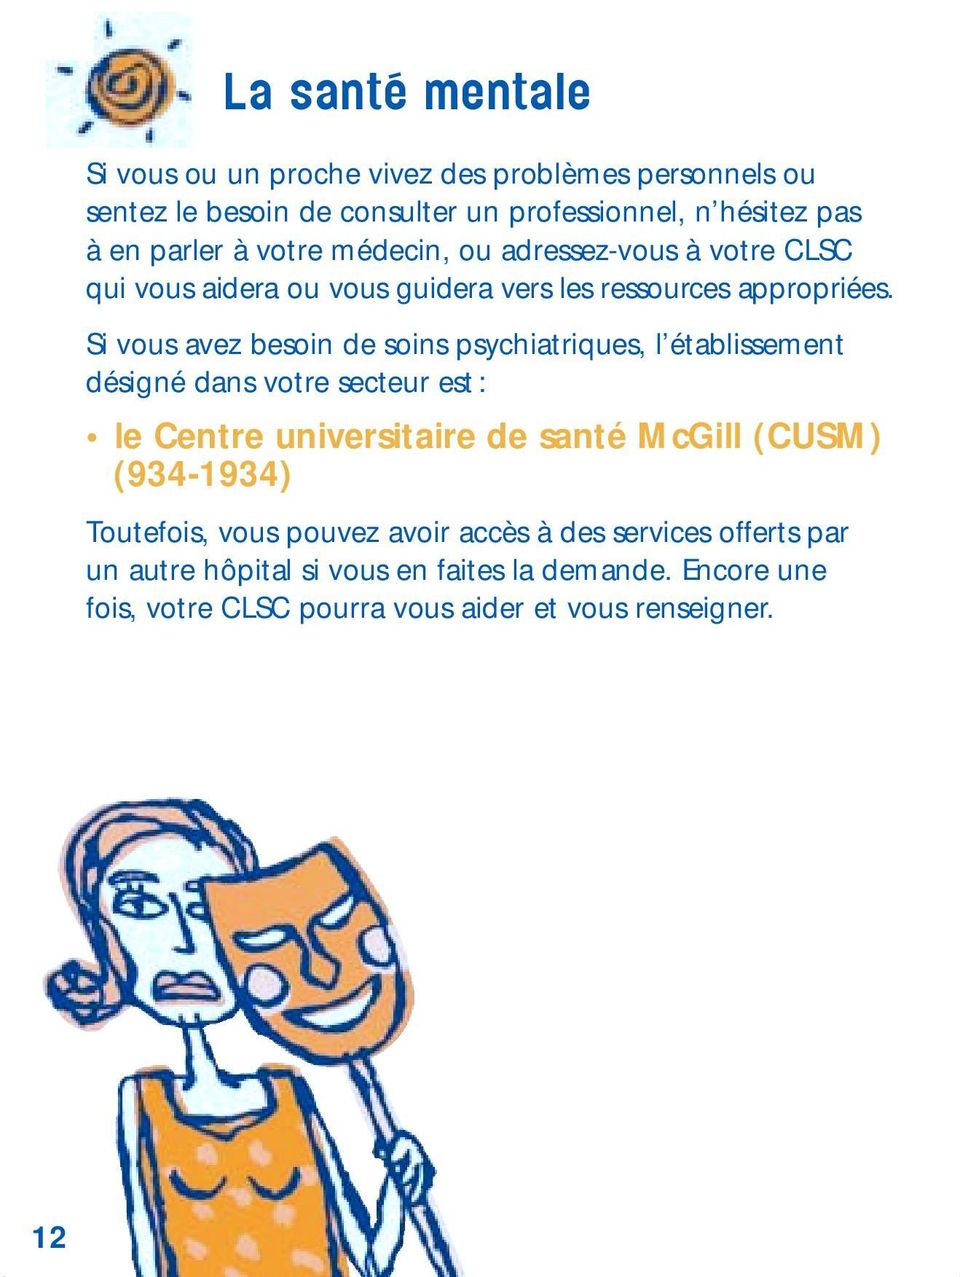 Si vous avez besoin de soins psychiatriques, l établissement désigné dans votre secteur est : le Centre universitaire de santé McGill (CUSM)